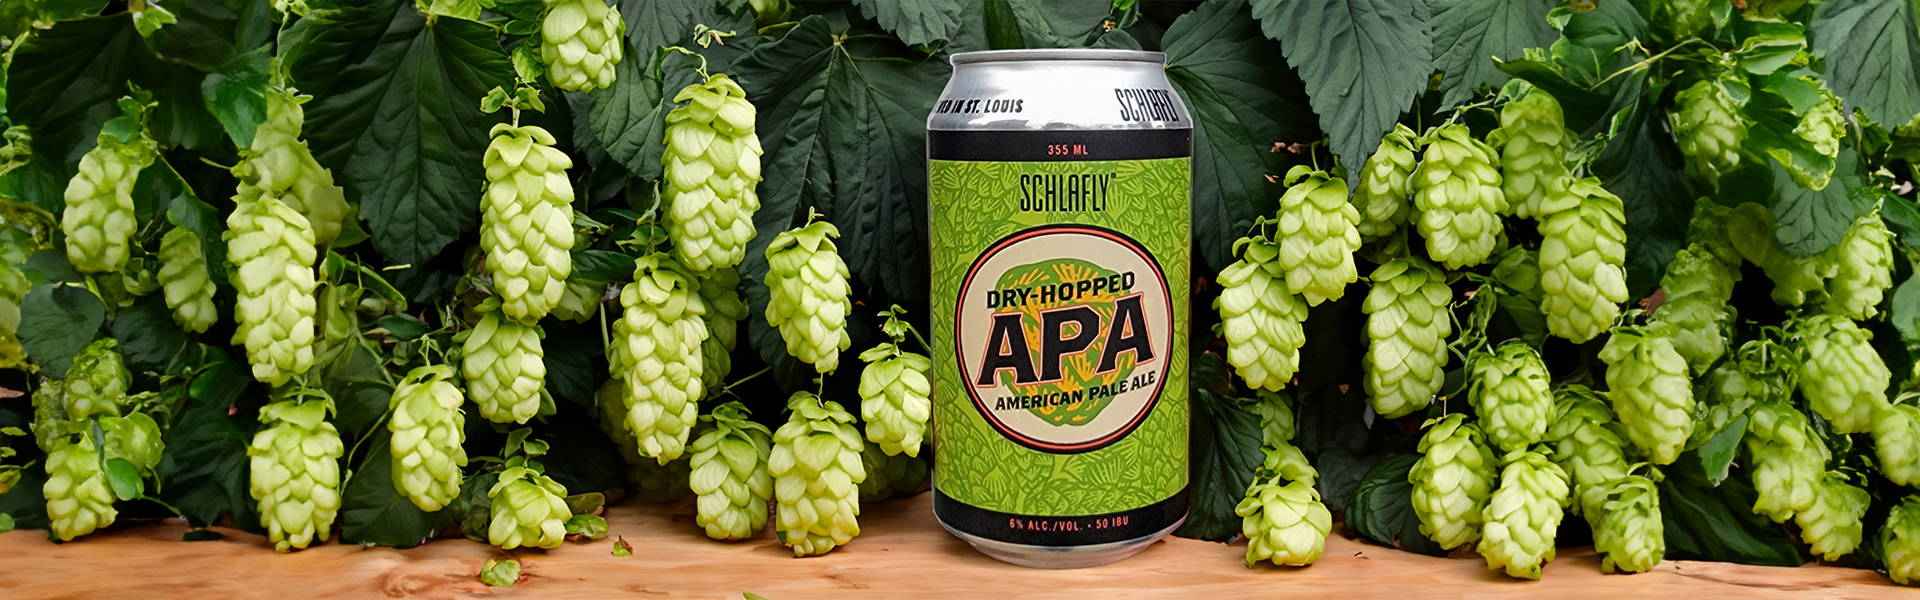 Saint Louis bryggeriet Schlafly lanserar Dry-Hopped APA i tillfälligt släpp på Systembolaget.